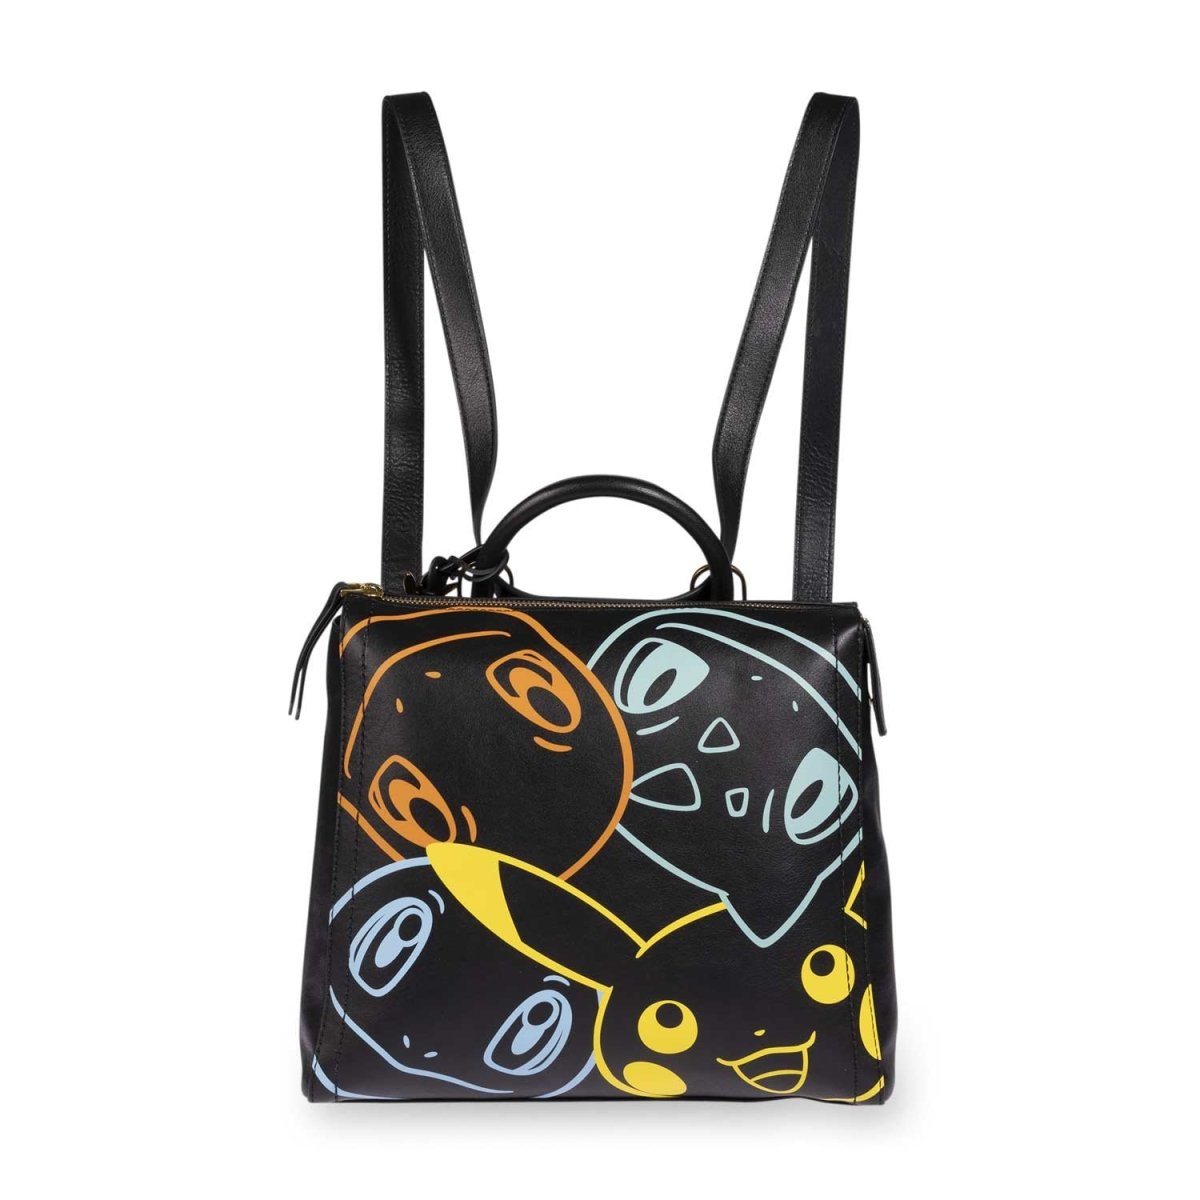 Vintage Black Leather Bag by Derek Alexander | Etsy Canada | Leather  handbags women, Leather shoulder bag, Black leather purse